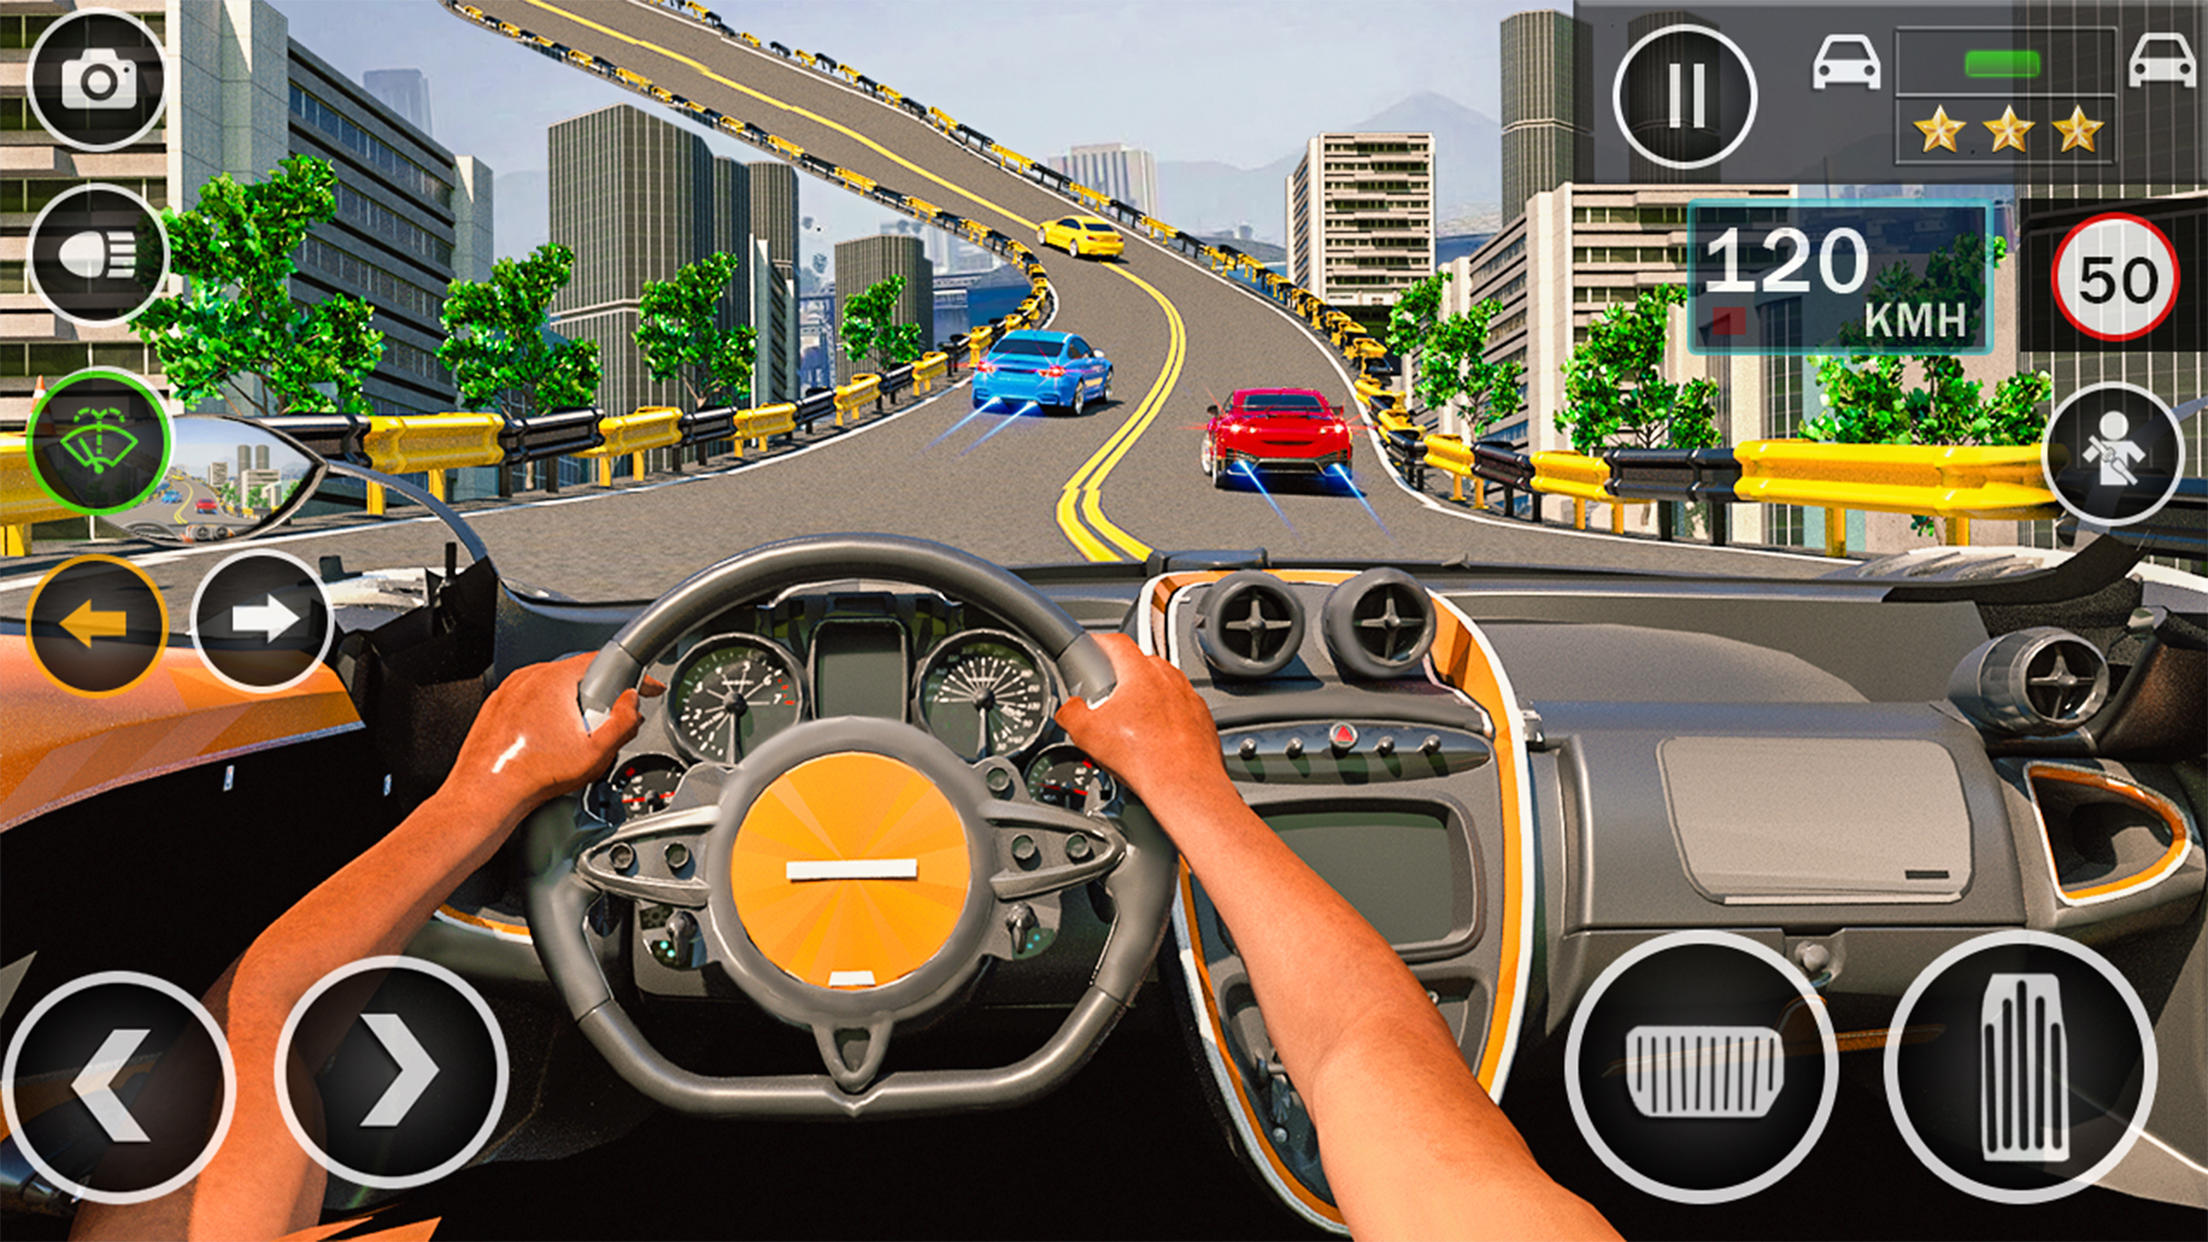 Screenshot 1 of Trò chơi đỗ xe ô tô trong thành phố 1.5.2.0